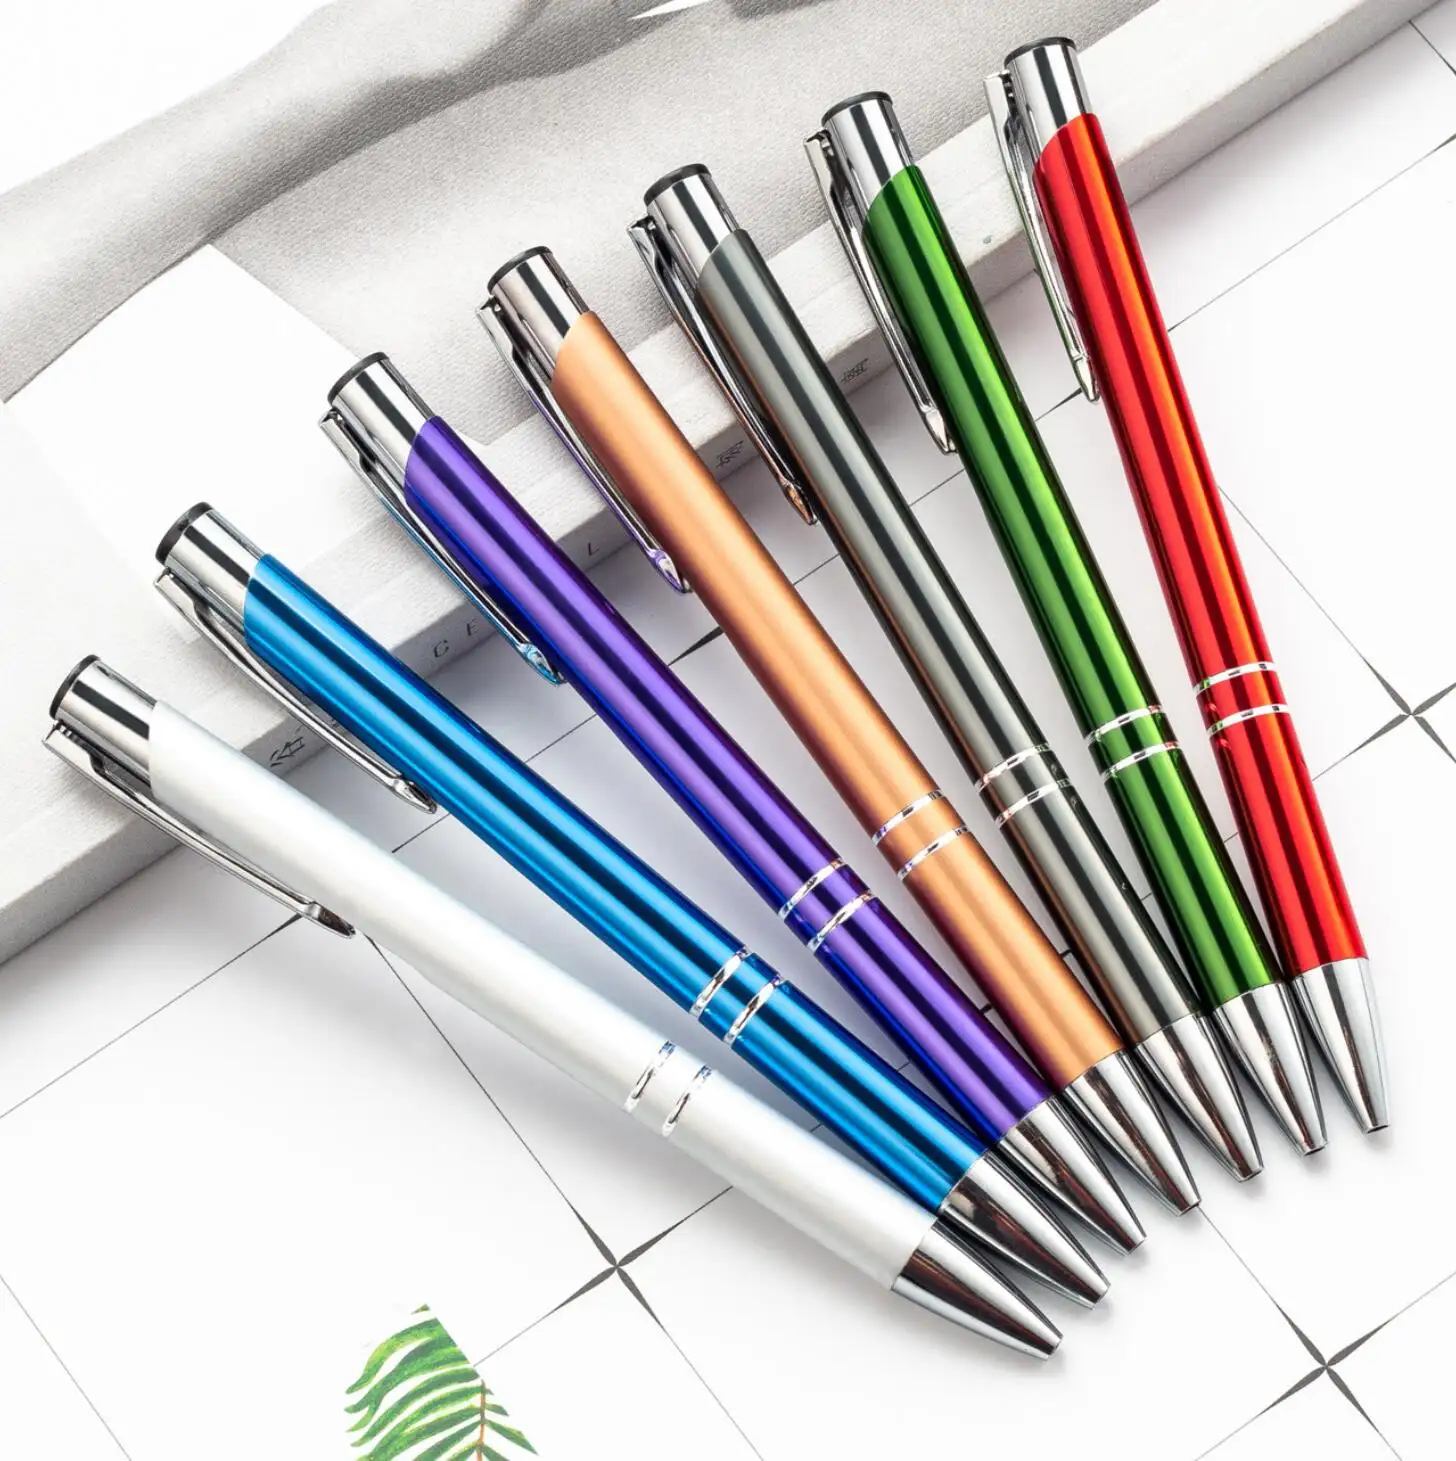 ปากกาอลูมิเนียมสลักเกลียวสำหรับธุรกิจ,ปากกาอะลูมิเนียมสลักลายได้ตามต้องการปากกาโฆษณาส่วนตัวแบบโลหะ